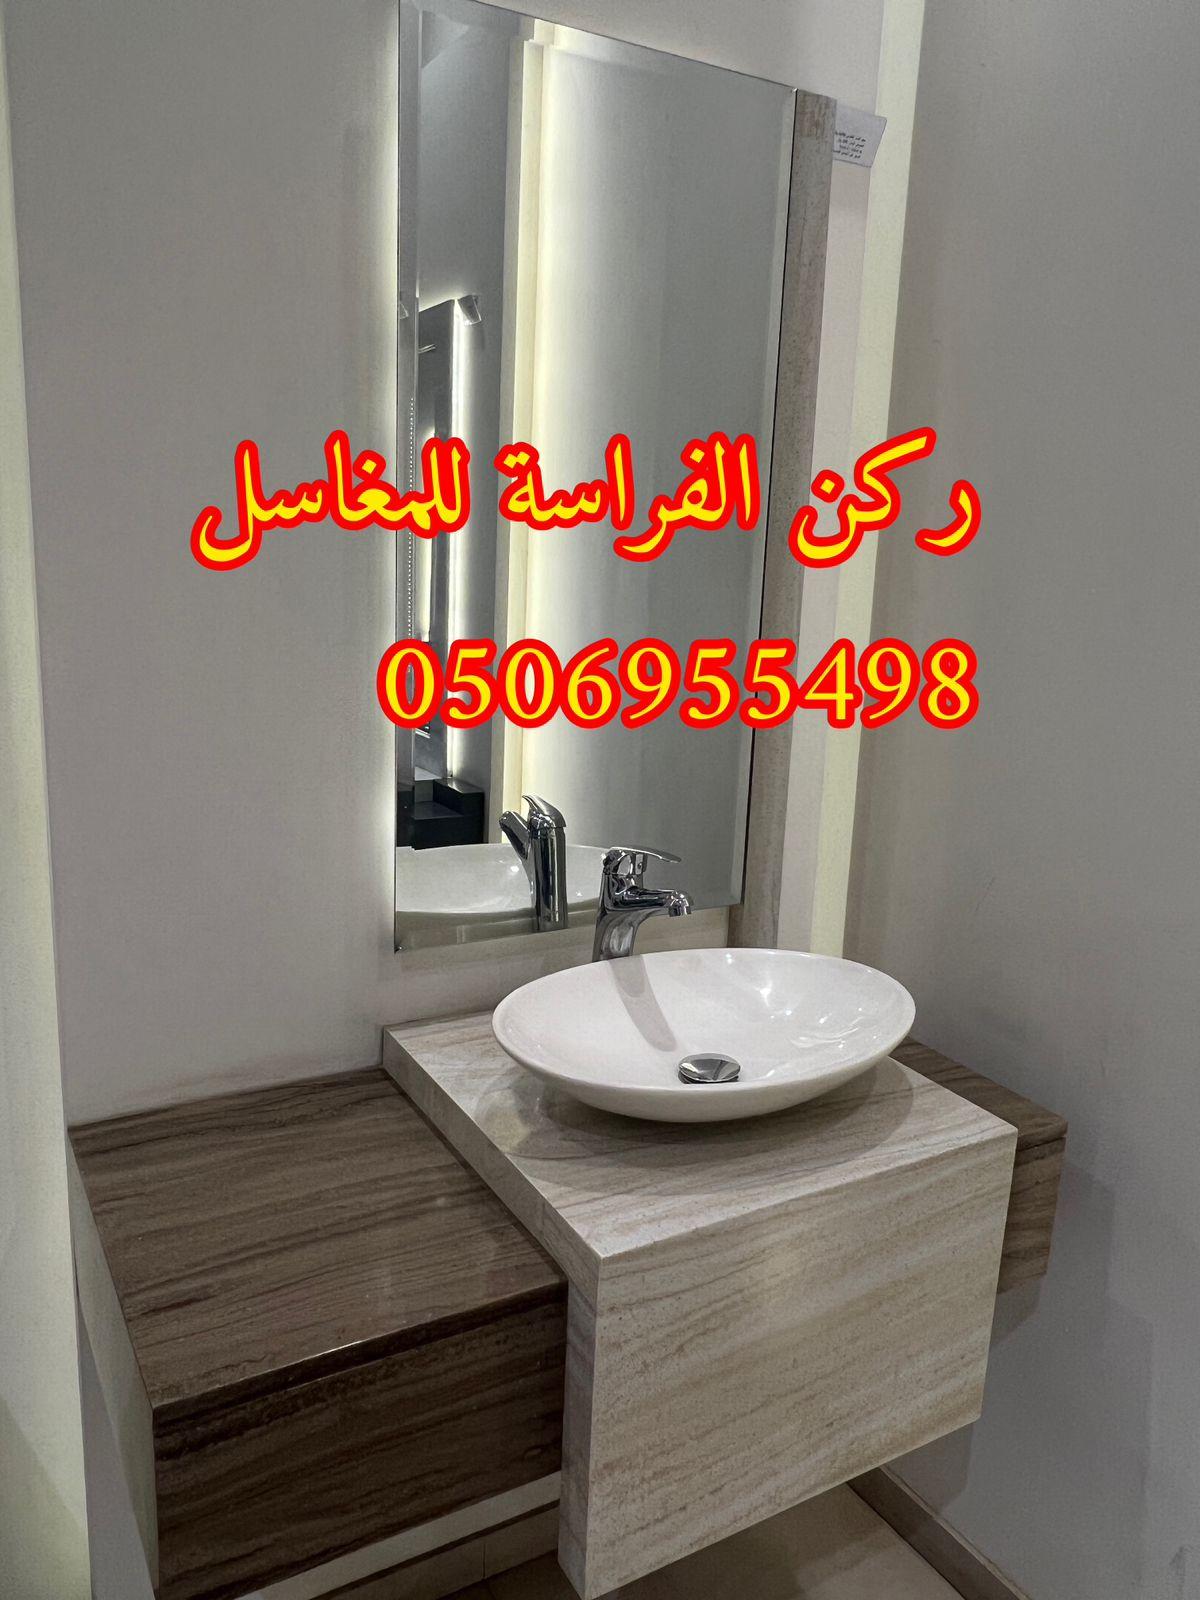 الرياض - اشكال مغاسل رخام طبيعي وصناعي في الرياض,0506955498 702894979